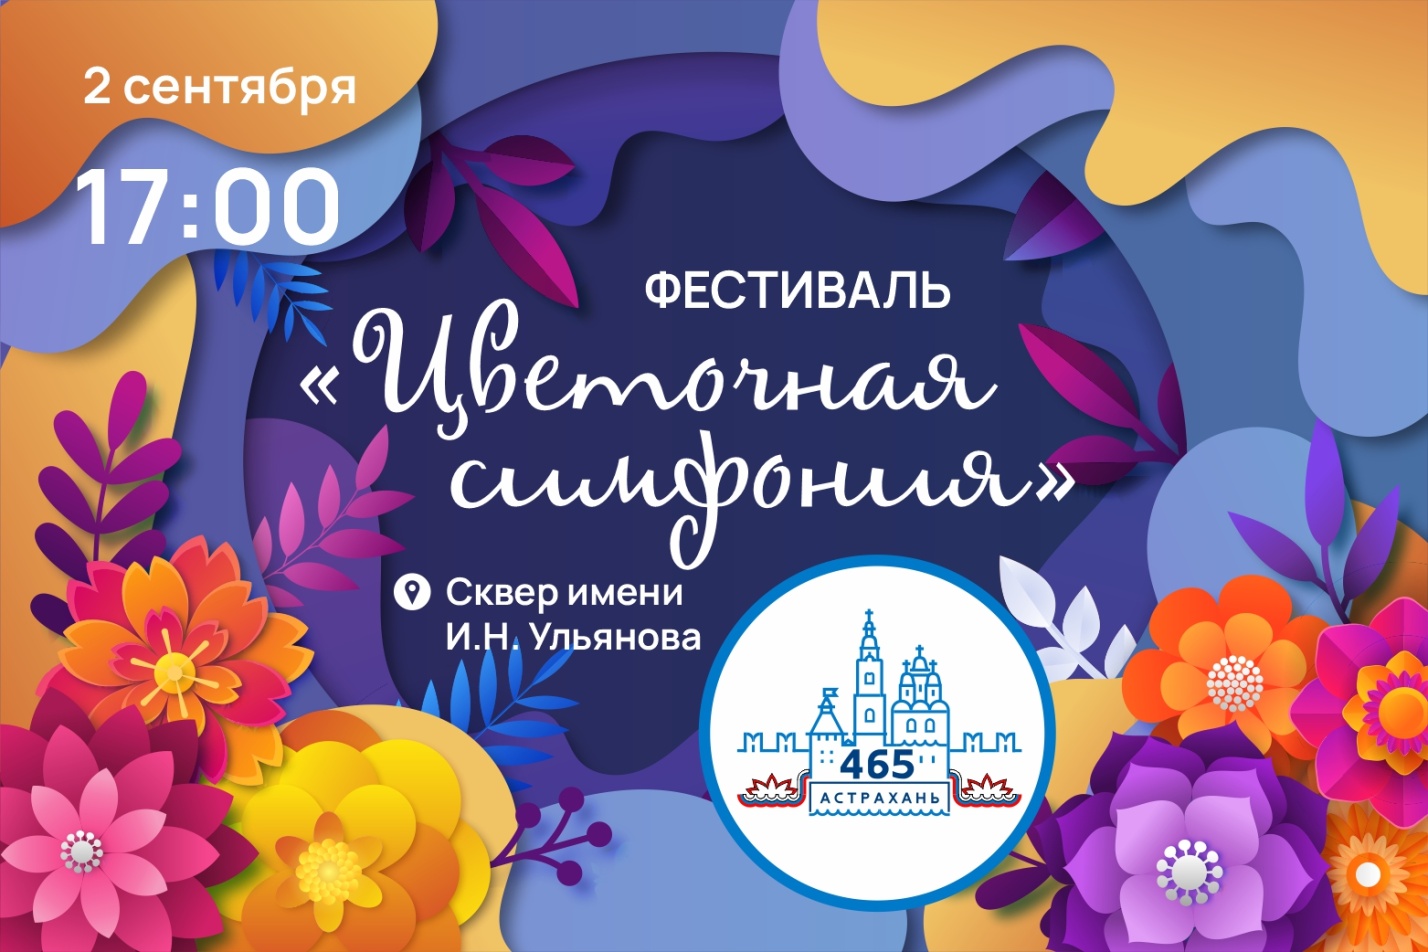 Серию мероприятий в честь Дня рождения Астрахани откроет фестиваль цветов